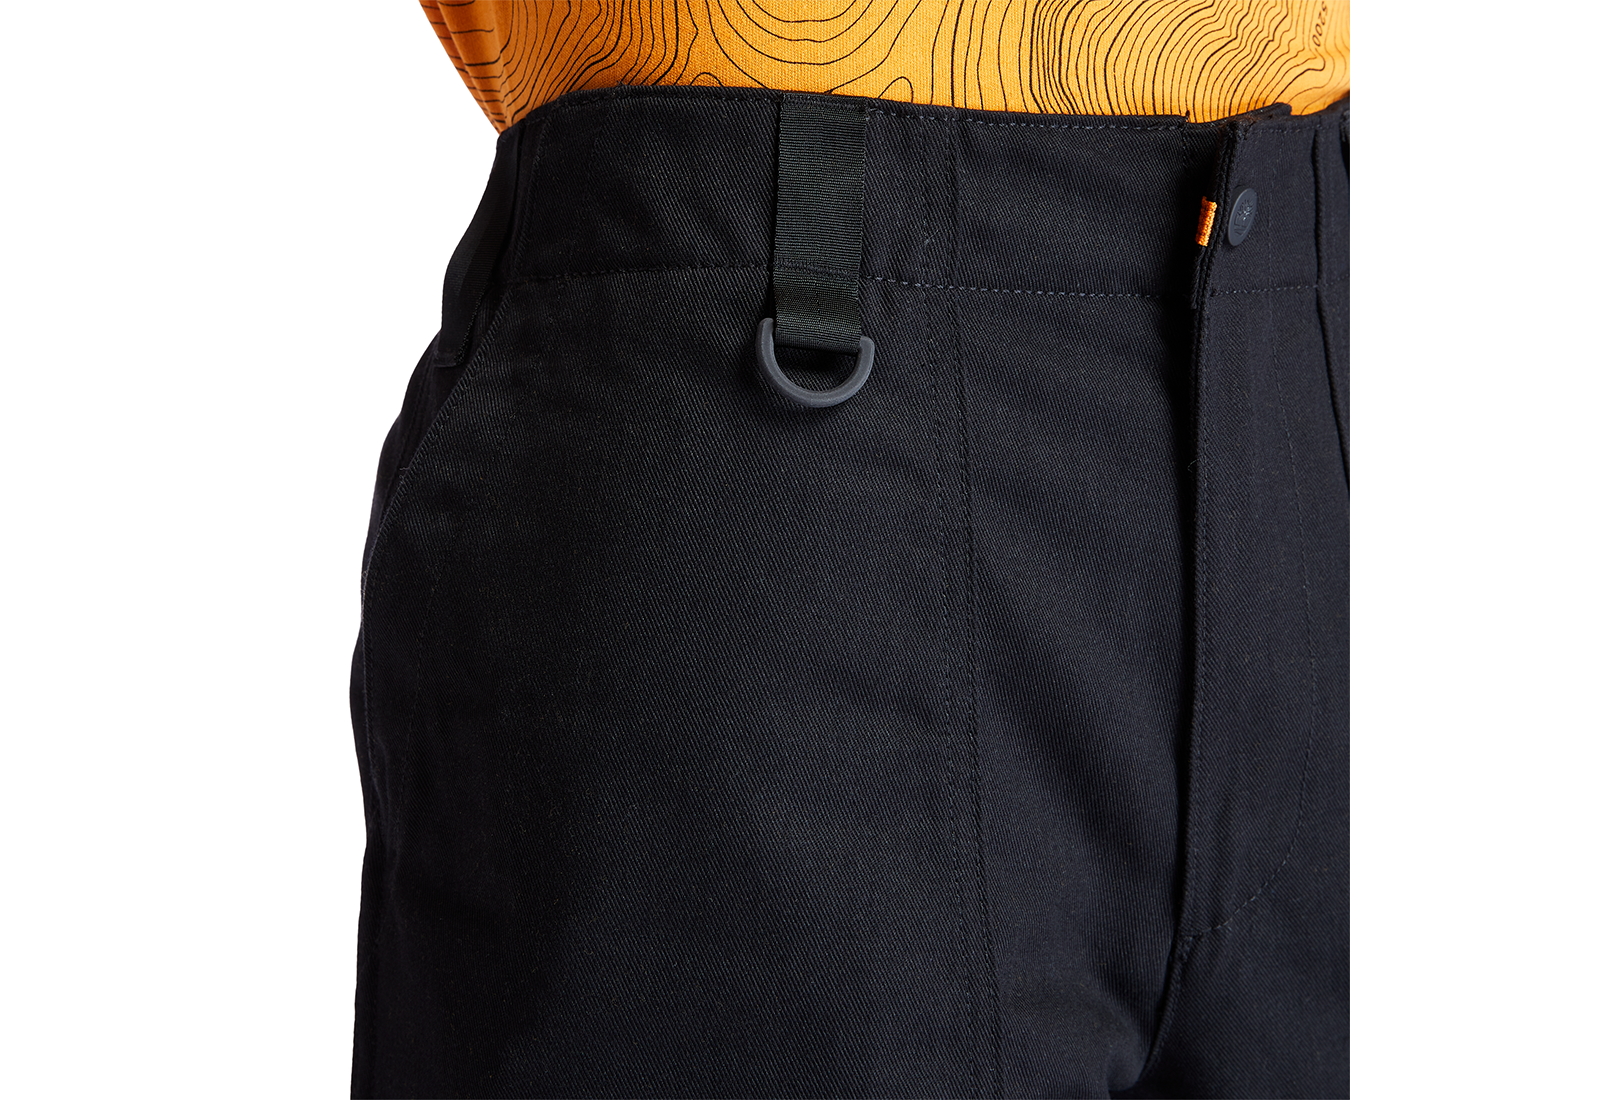 Timberland Oblečení YC Workwear Pant